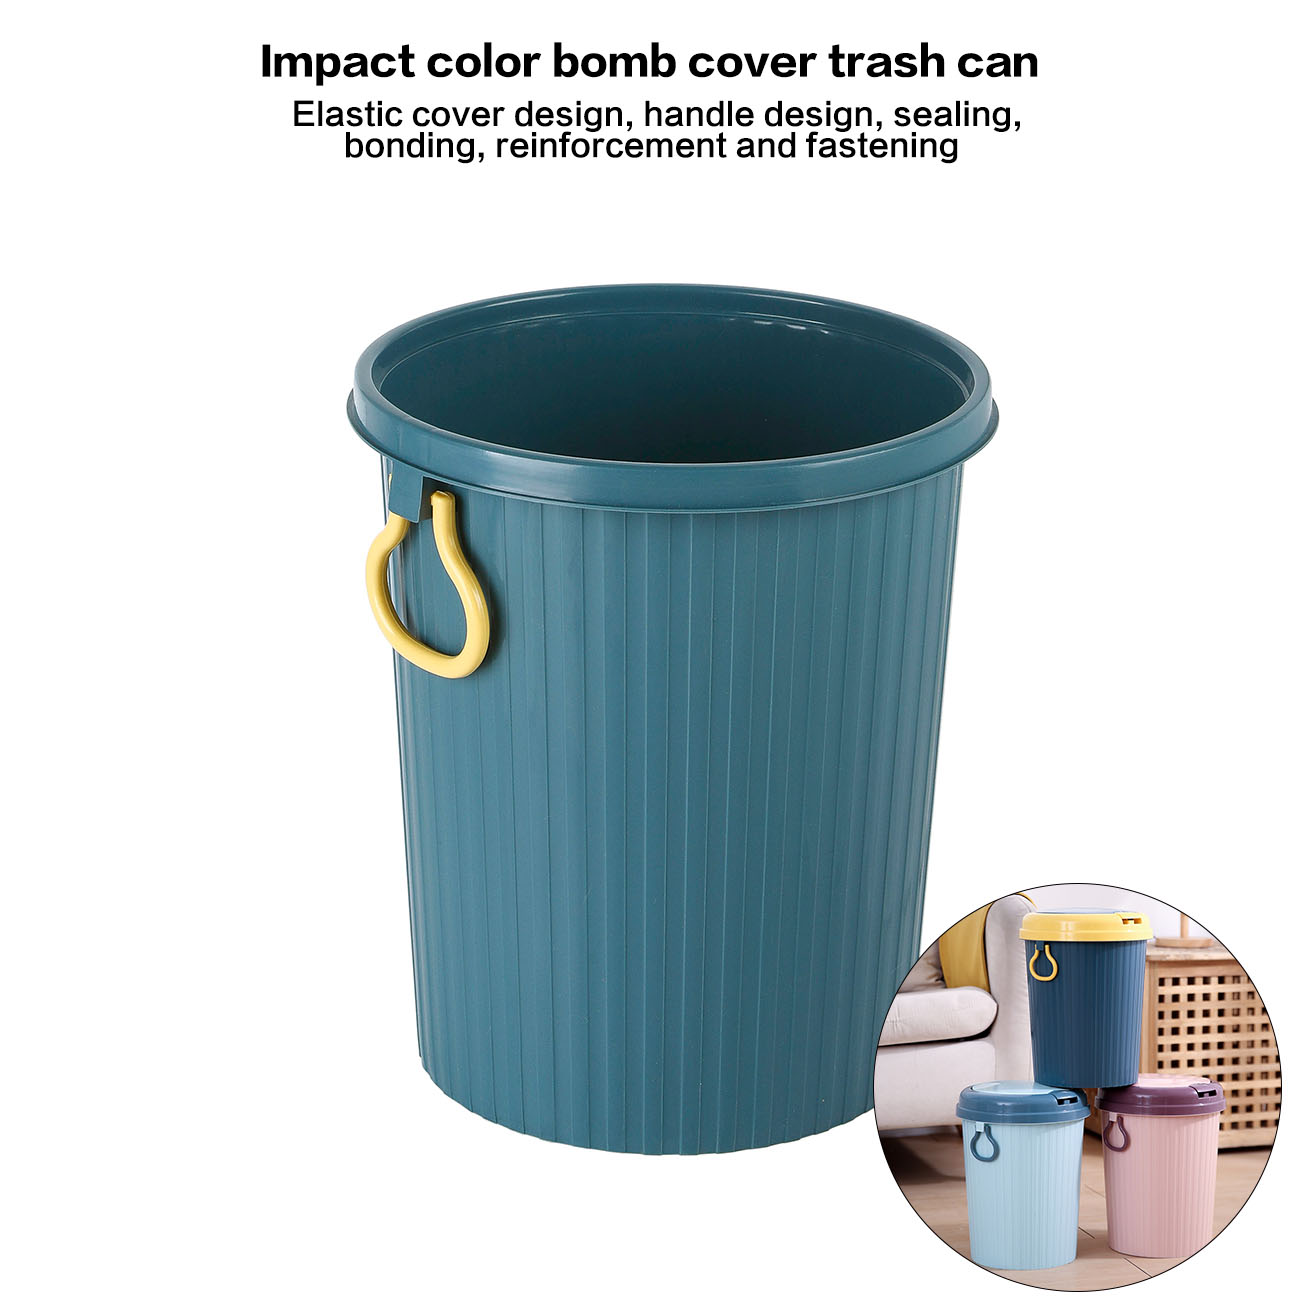 Thùng rác PP bền nắp bật tránh bị có mùi thiết kế tay xách tiện dụng